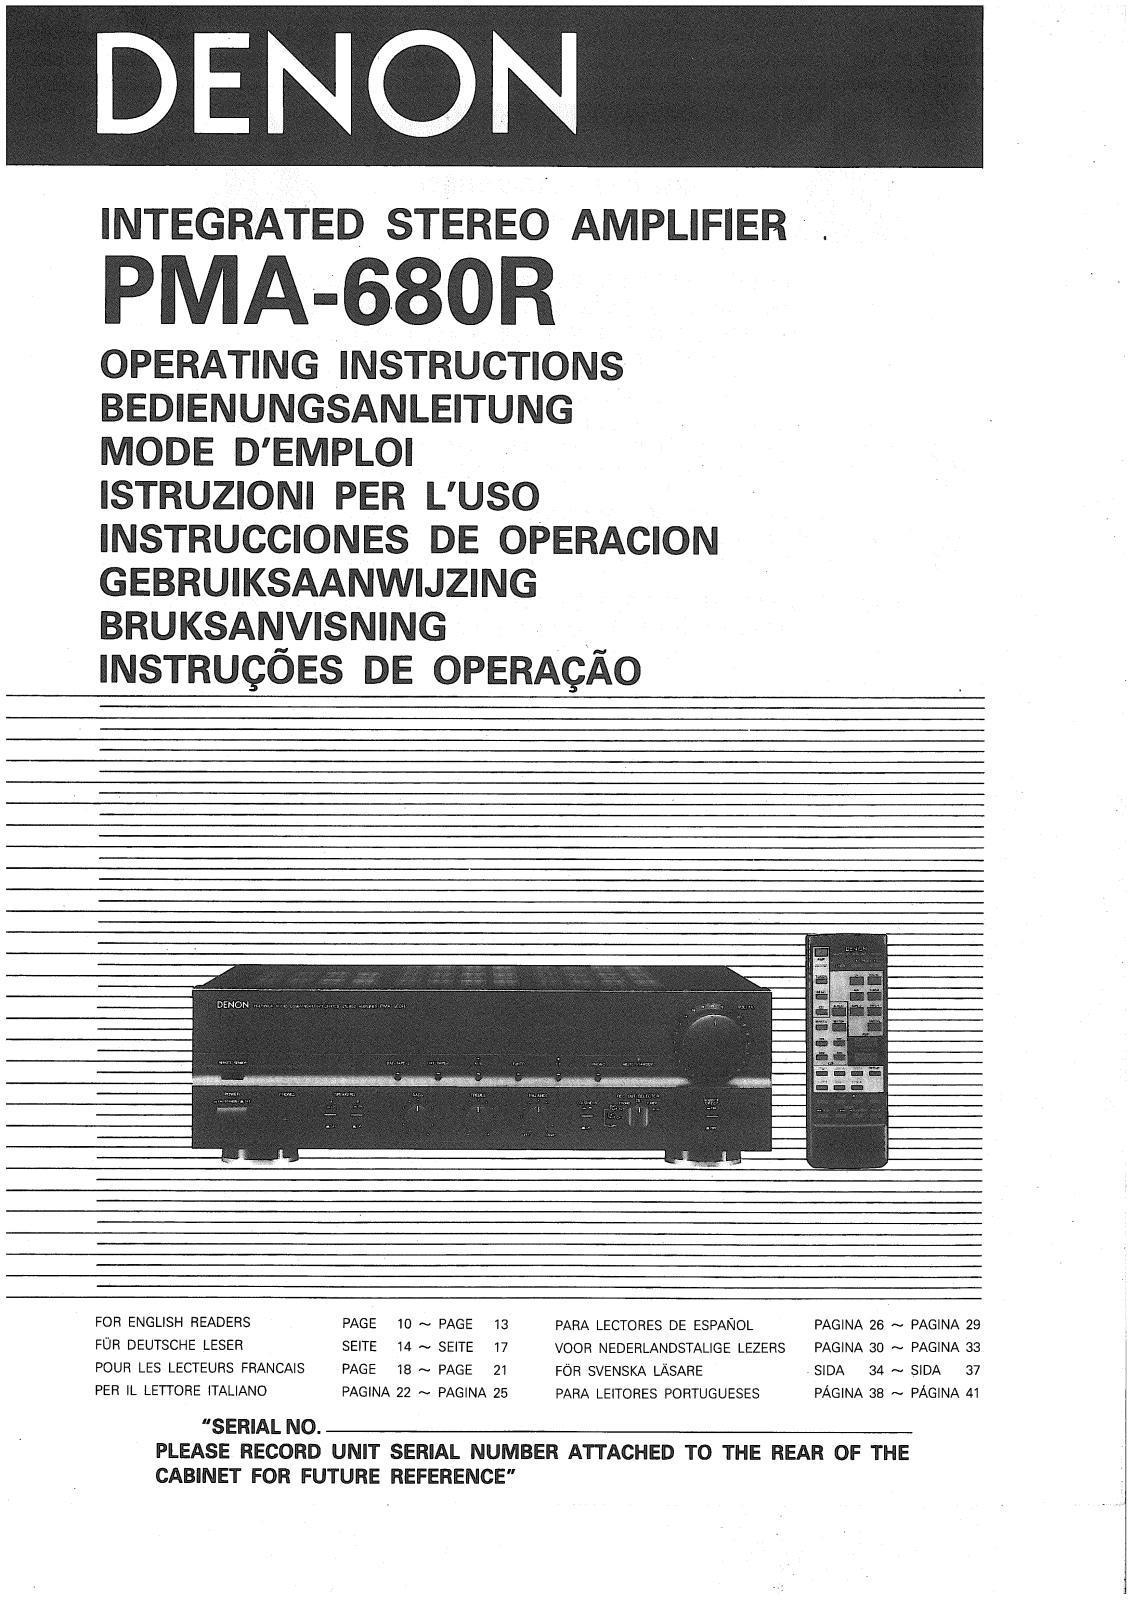 Denon PMA-680R Owner's Manual